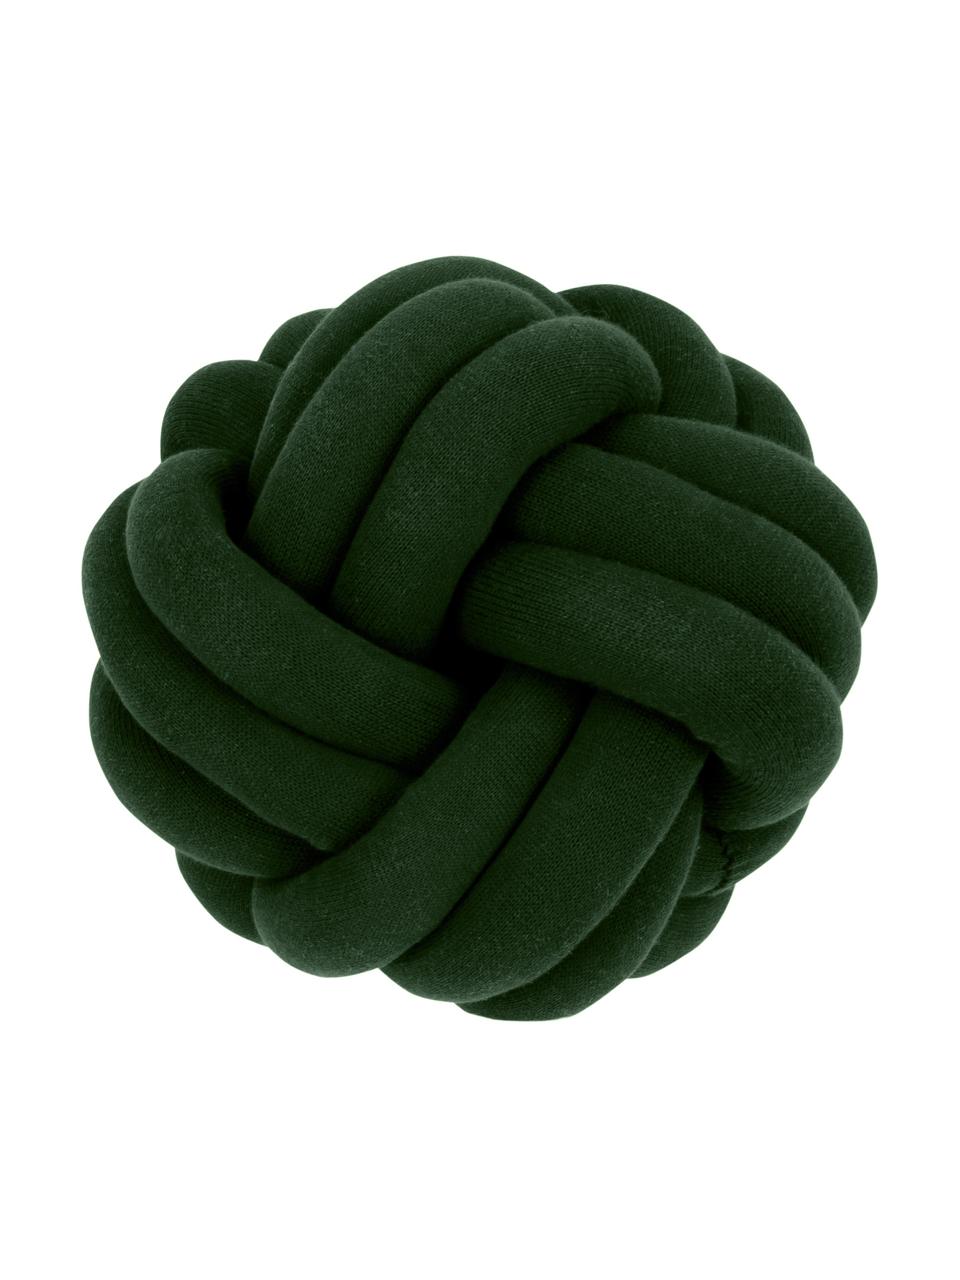 Spletený polštář Twist, Tmavě zelená, Ø 30 cm